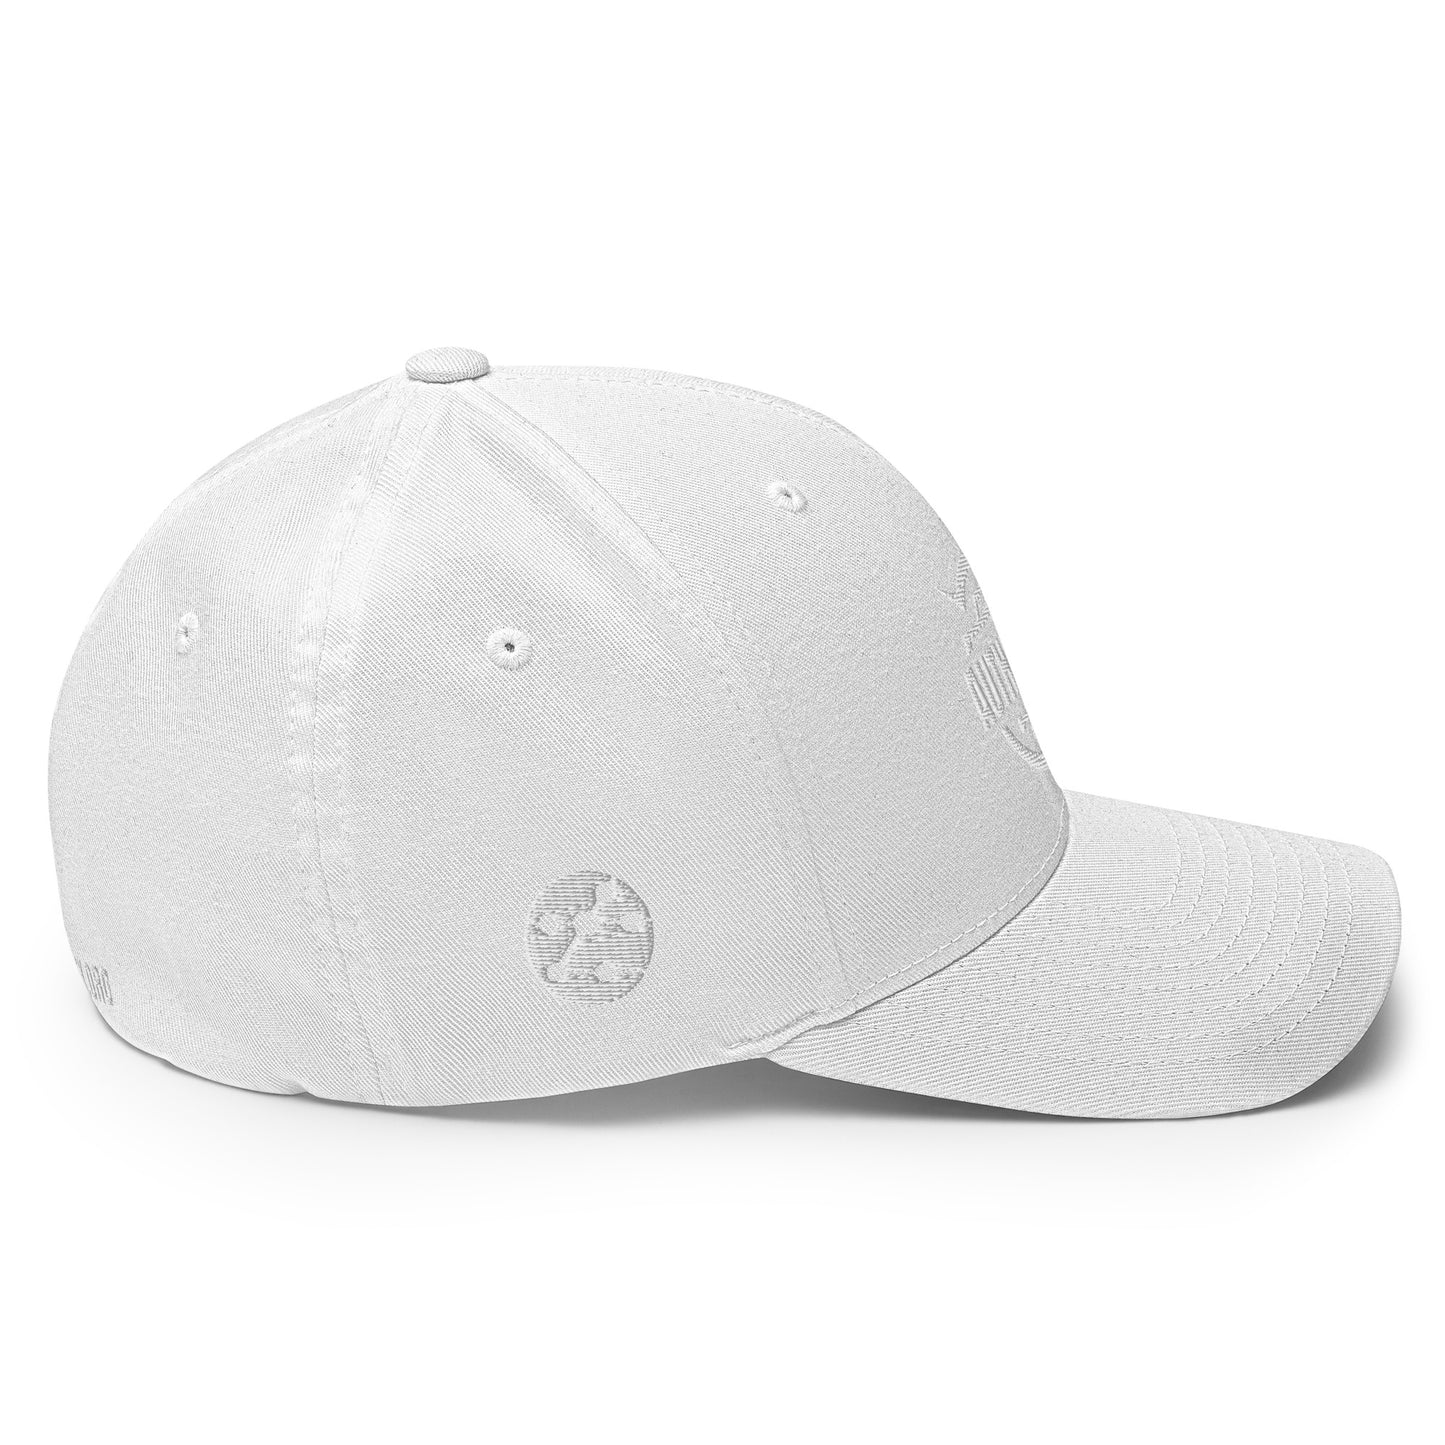 AuthenTEK Trend Whiteout FlexFit Hat